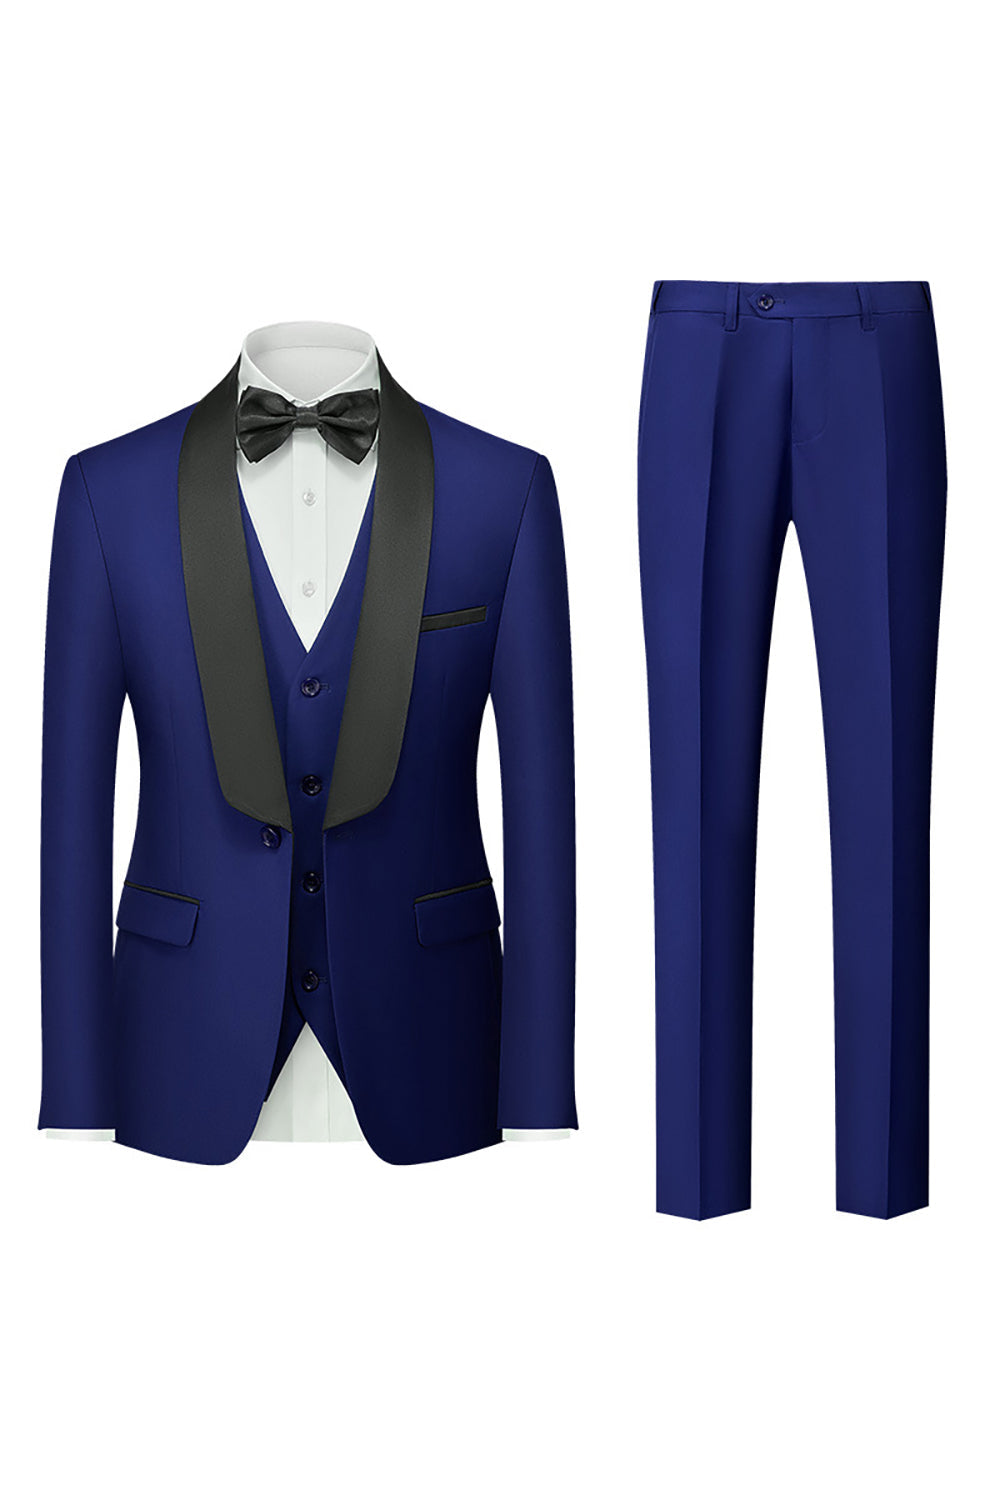 Royal Blue 3 Piece Shawl Lapel Men's Prom Suits